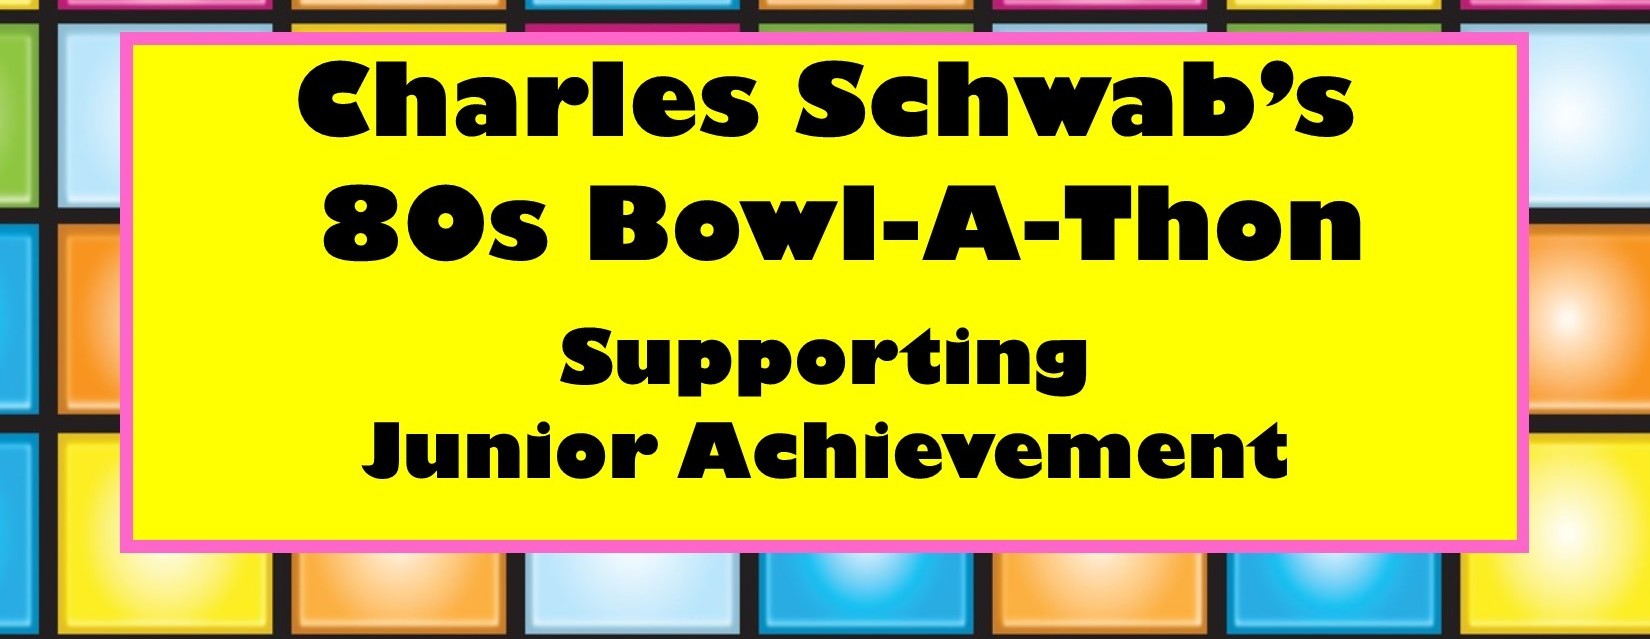 2019 Charles Schwab Bowl-A-Thon